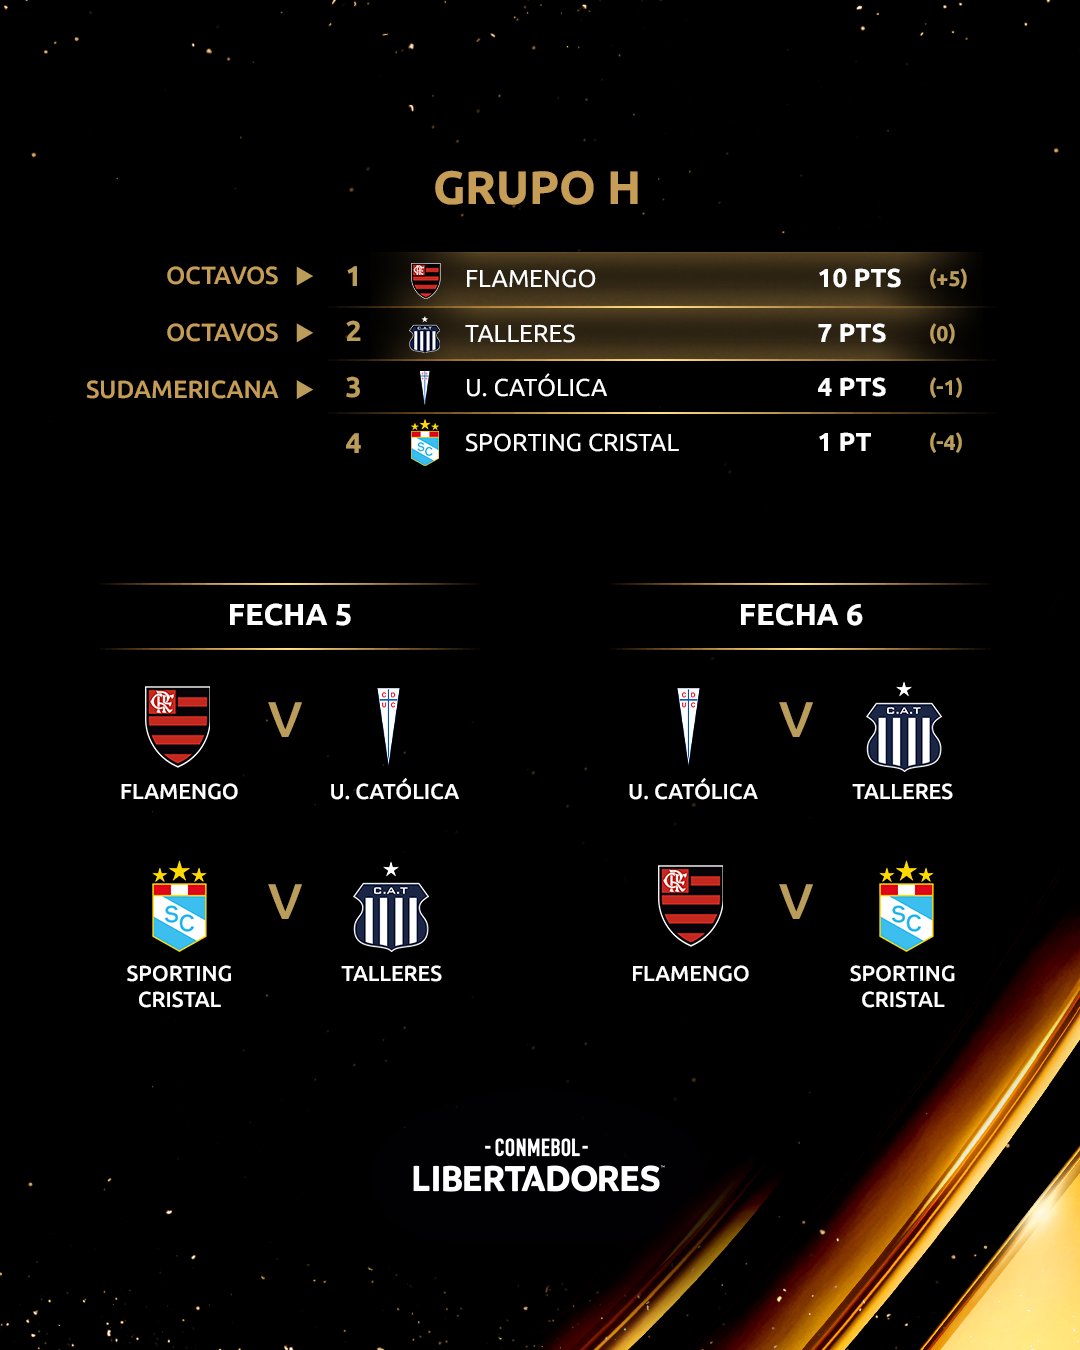 Tabla de posiciones del Grupo H previo a la jornada 5 de Copa Libertadores 2022.